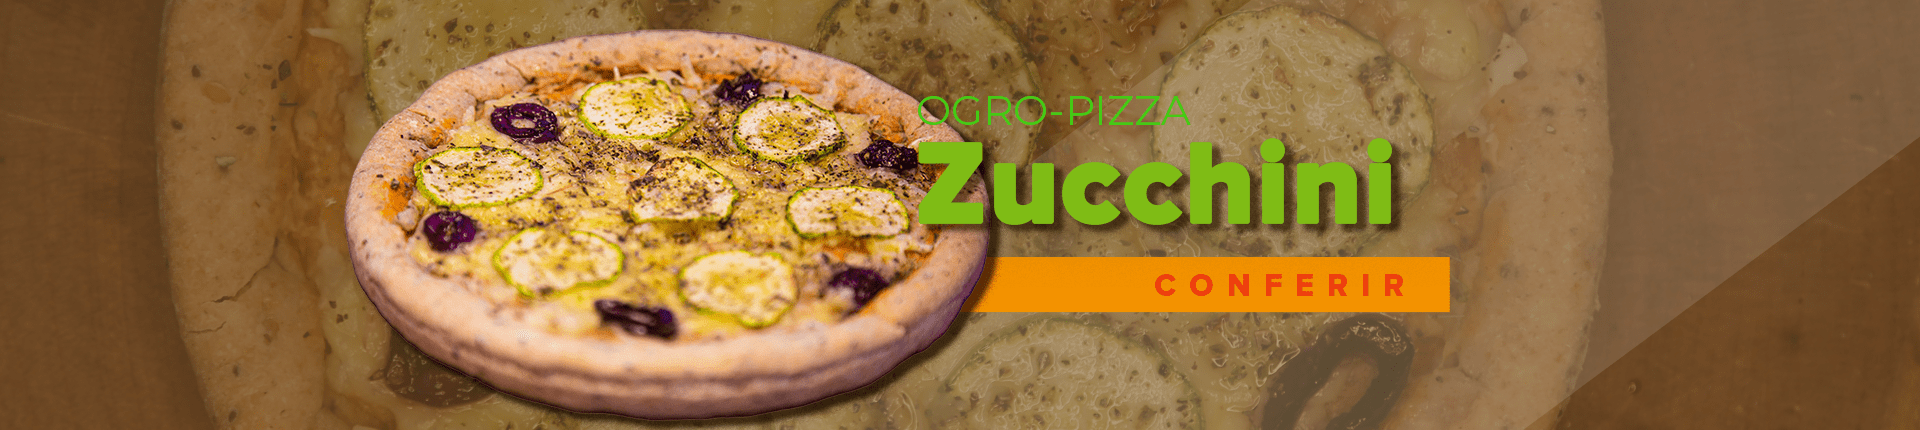 Ogro-Pizza Zucchini